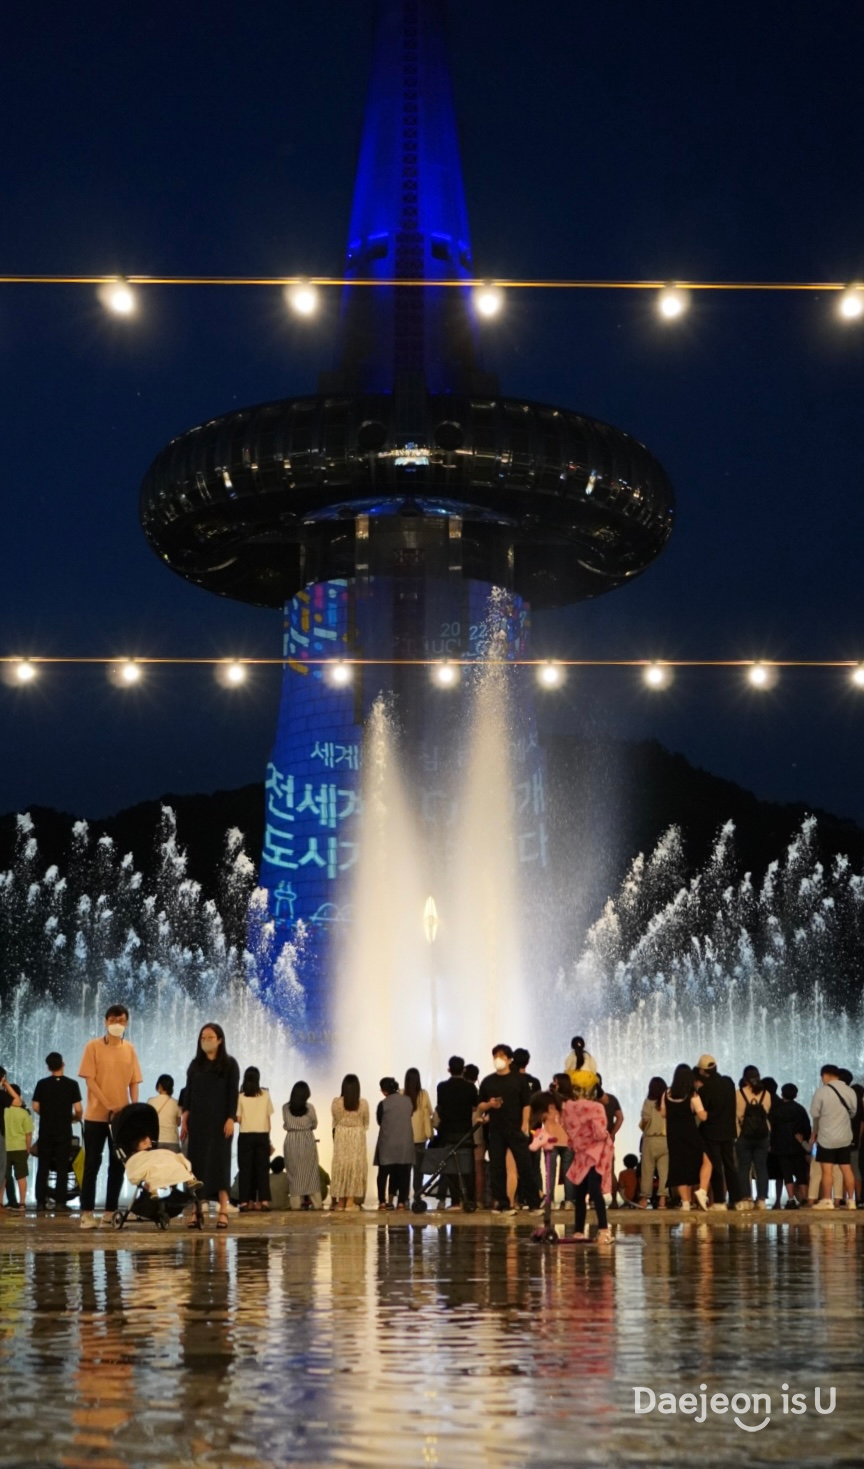 Du lịch Hàn Quốc 2022: Mãn nhãn với show nhạc nước đặc sắc tại thành phố Daejeon / 대전에서 즐기는 특별한 음악분수